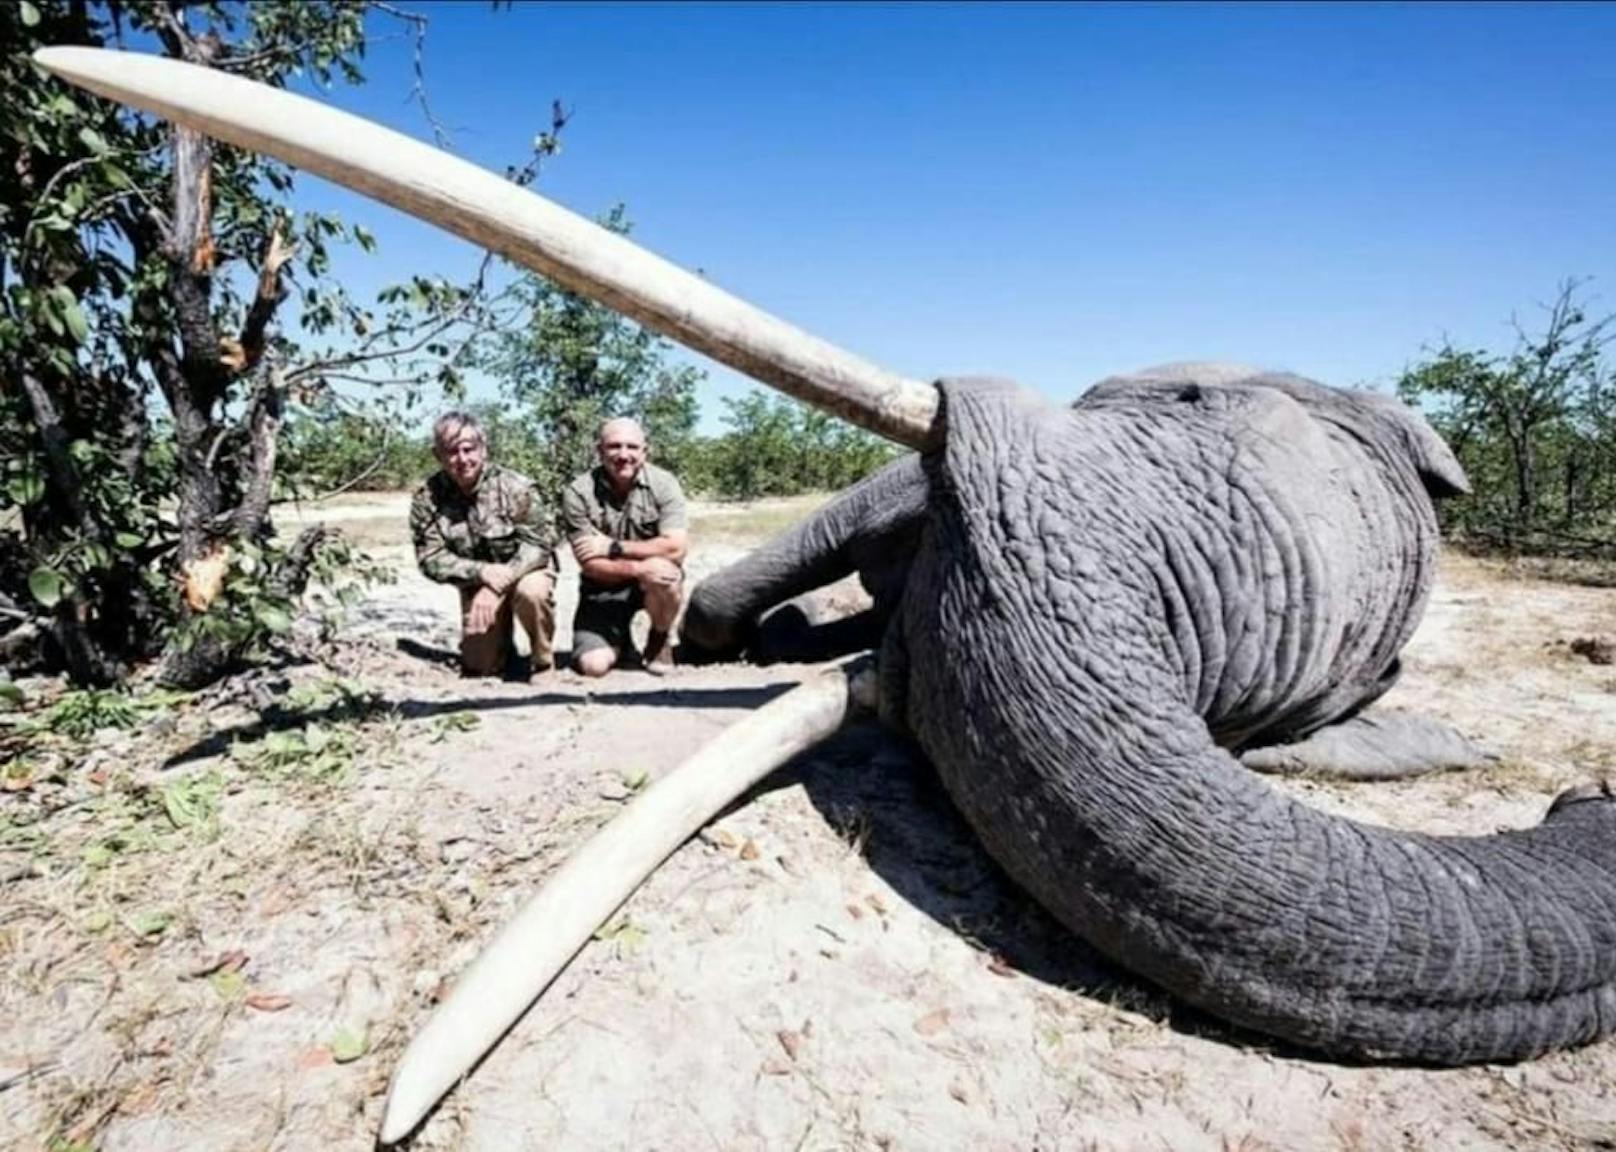 Lächelnd präsentieren sich die beiden Jäger neben dem getöteten Elefanten.